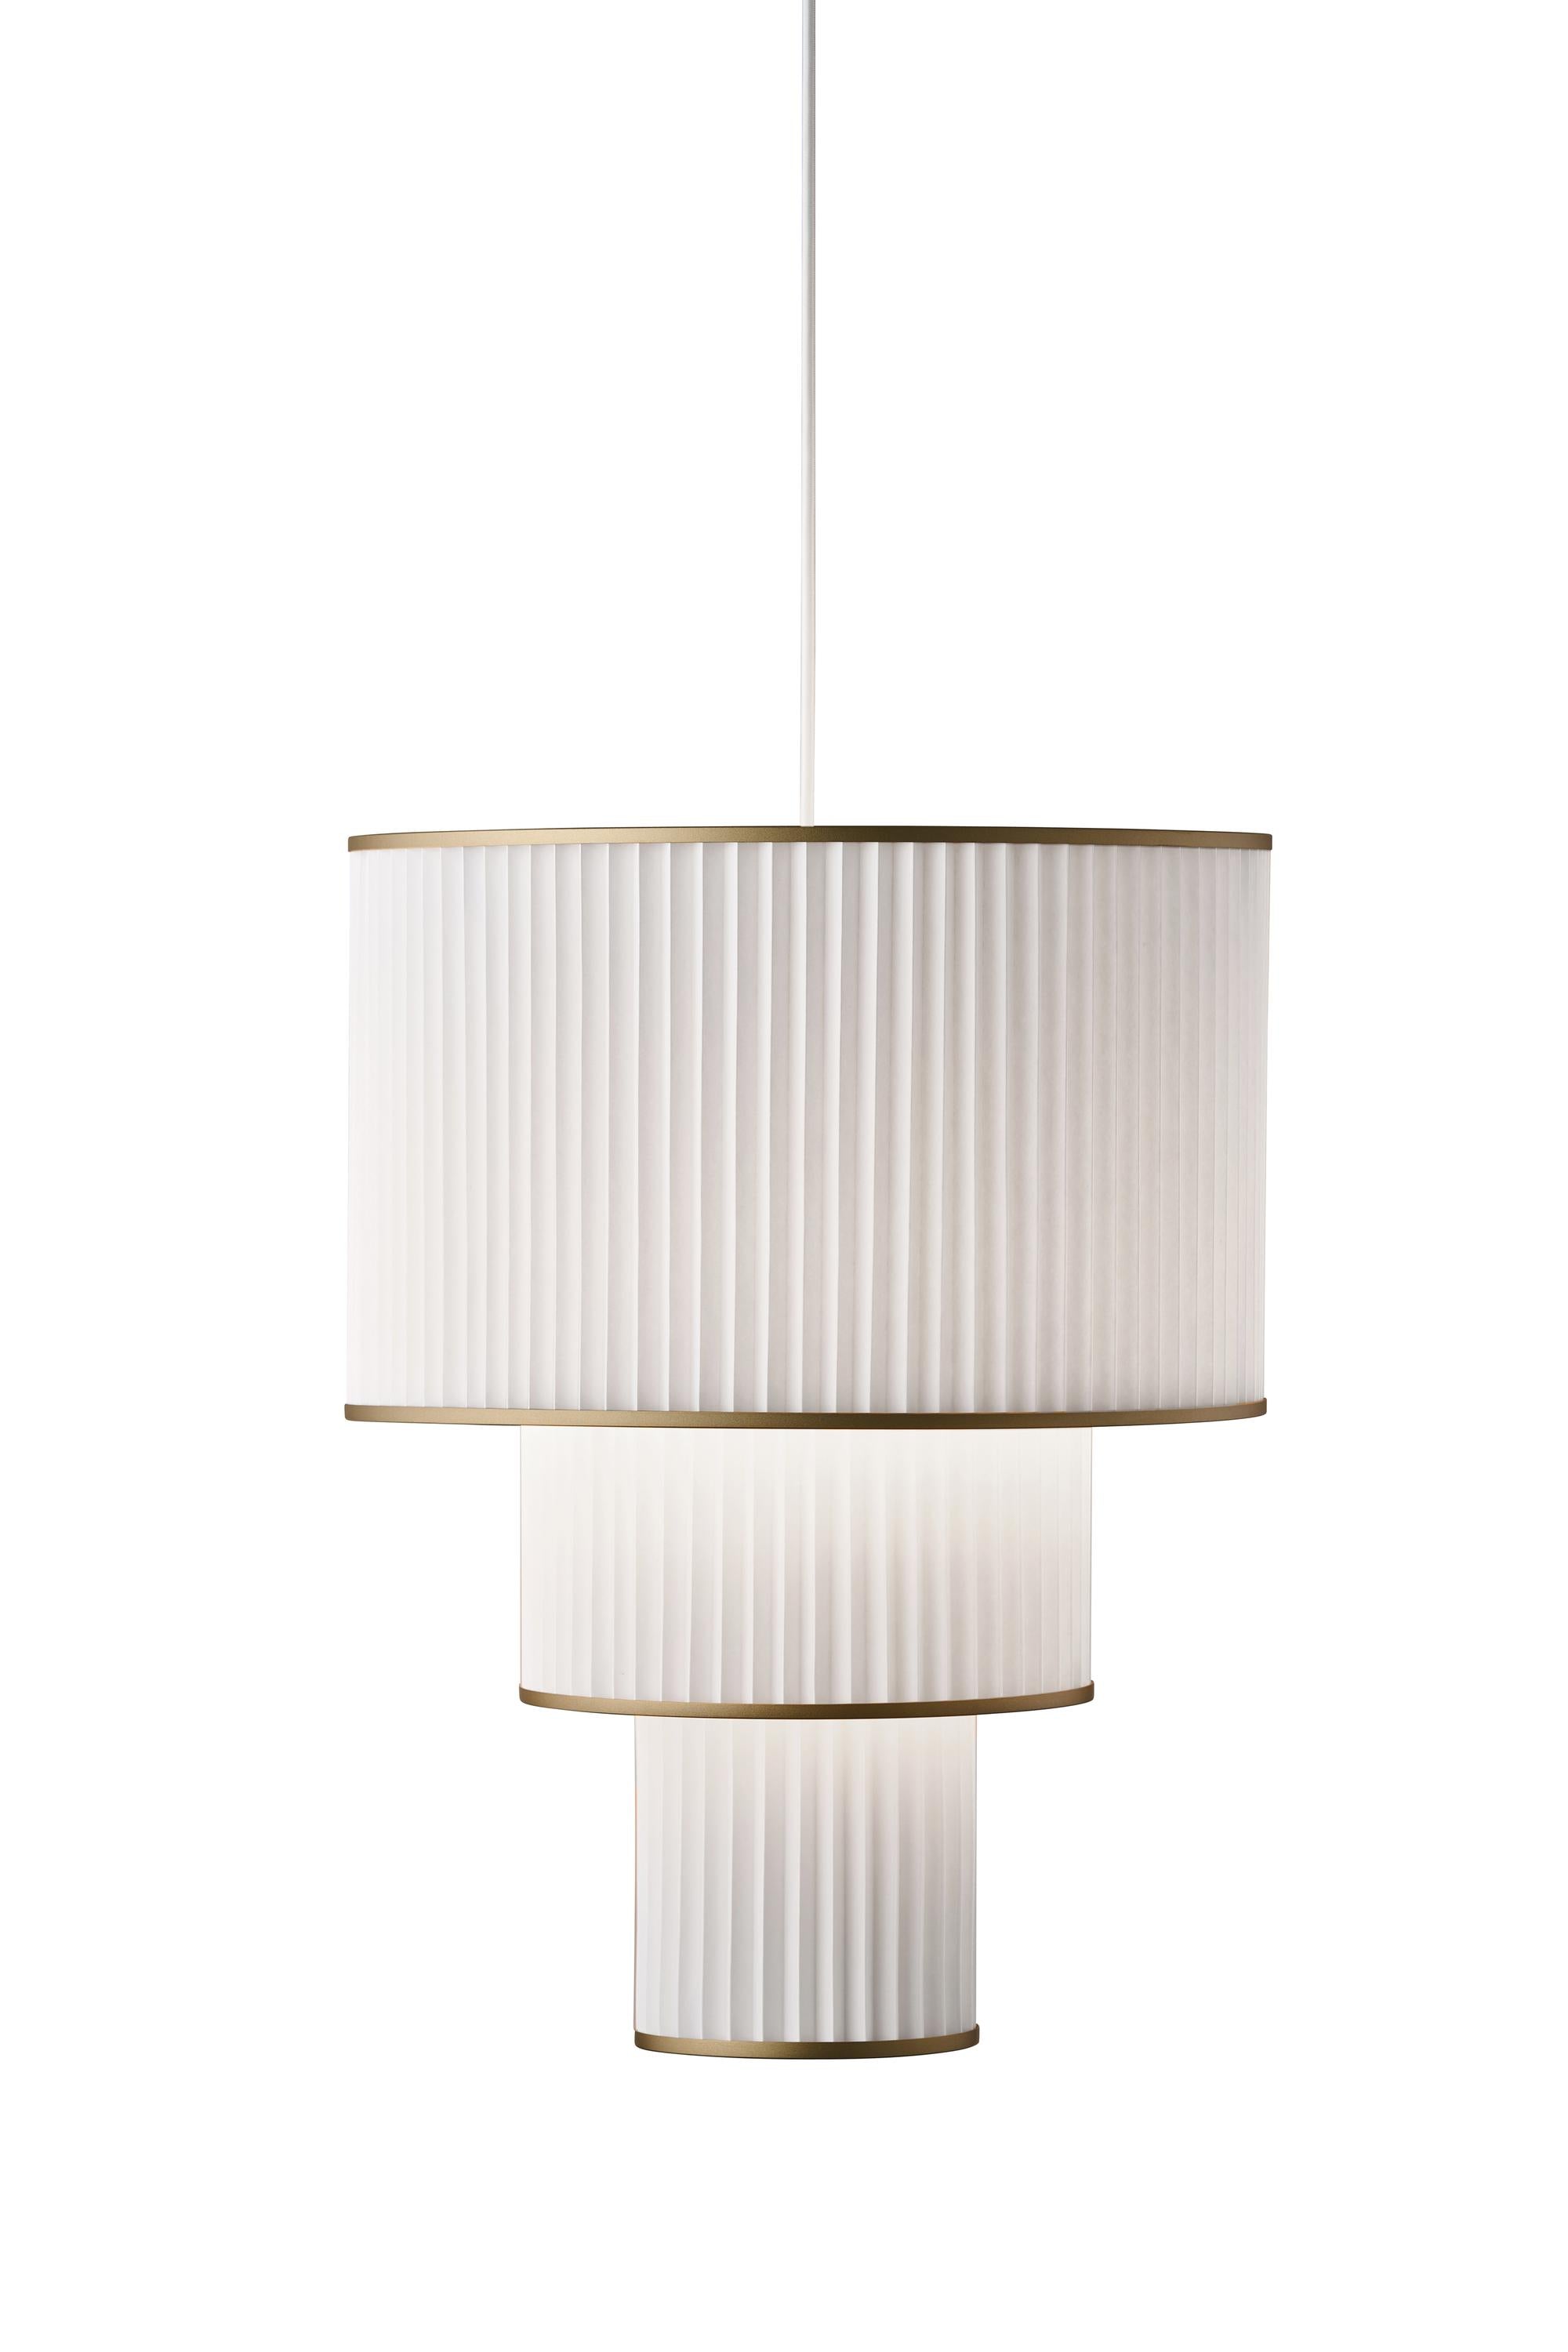 Le Klint Plivello Suspension Lamp Golden/White With 3 Shades (S M L)